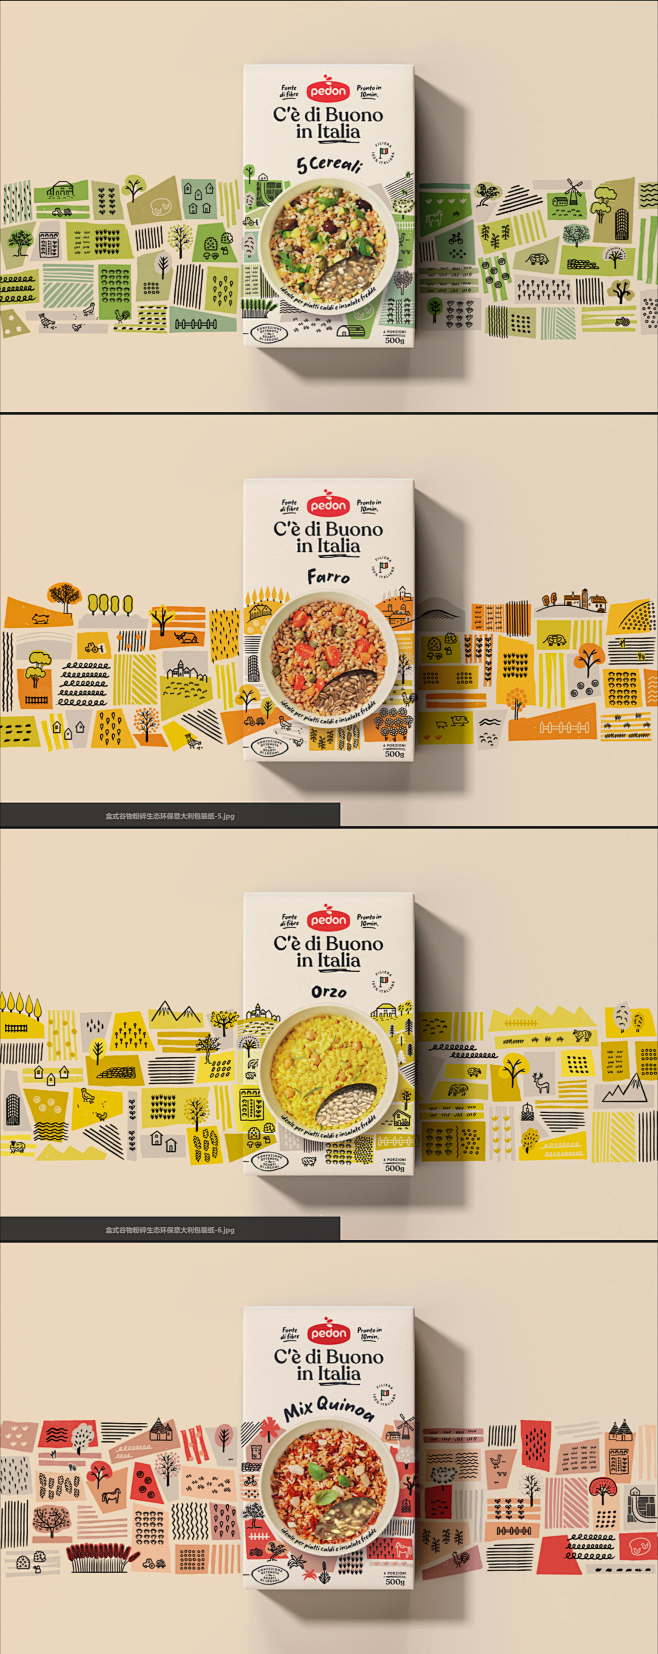 意大利盒式谷物食品包装设计